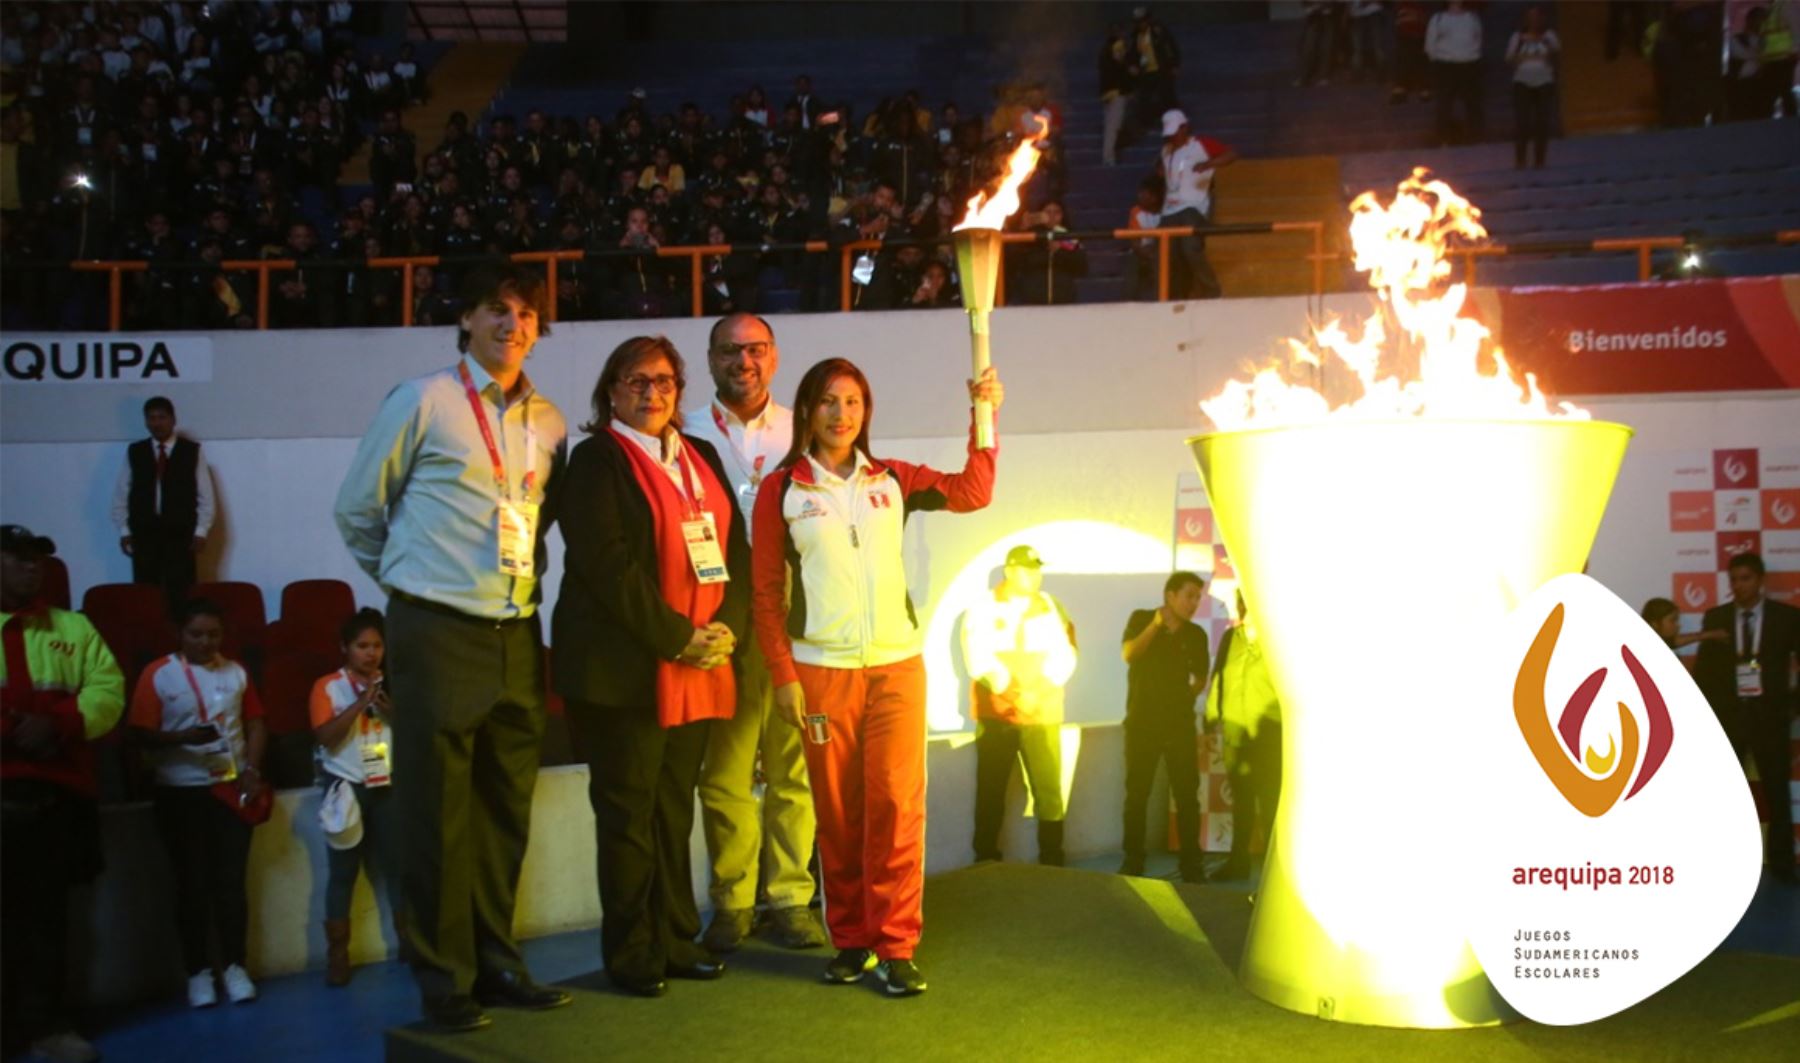 Los Juegos Sudamericanos Escolares se desarrollan en Arequipa